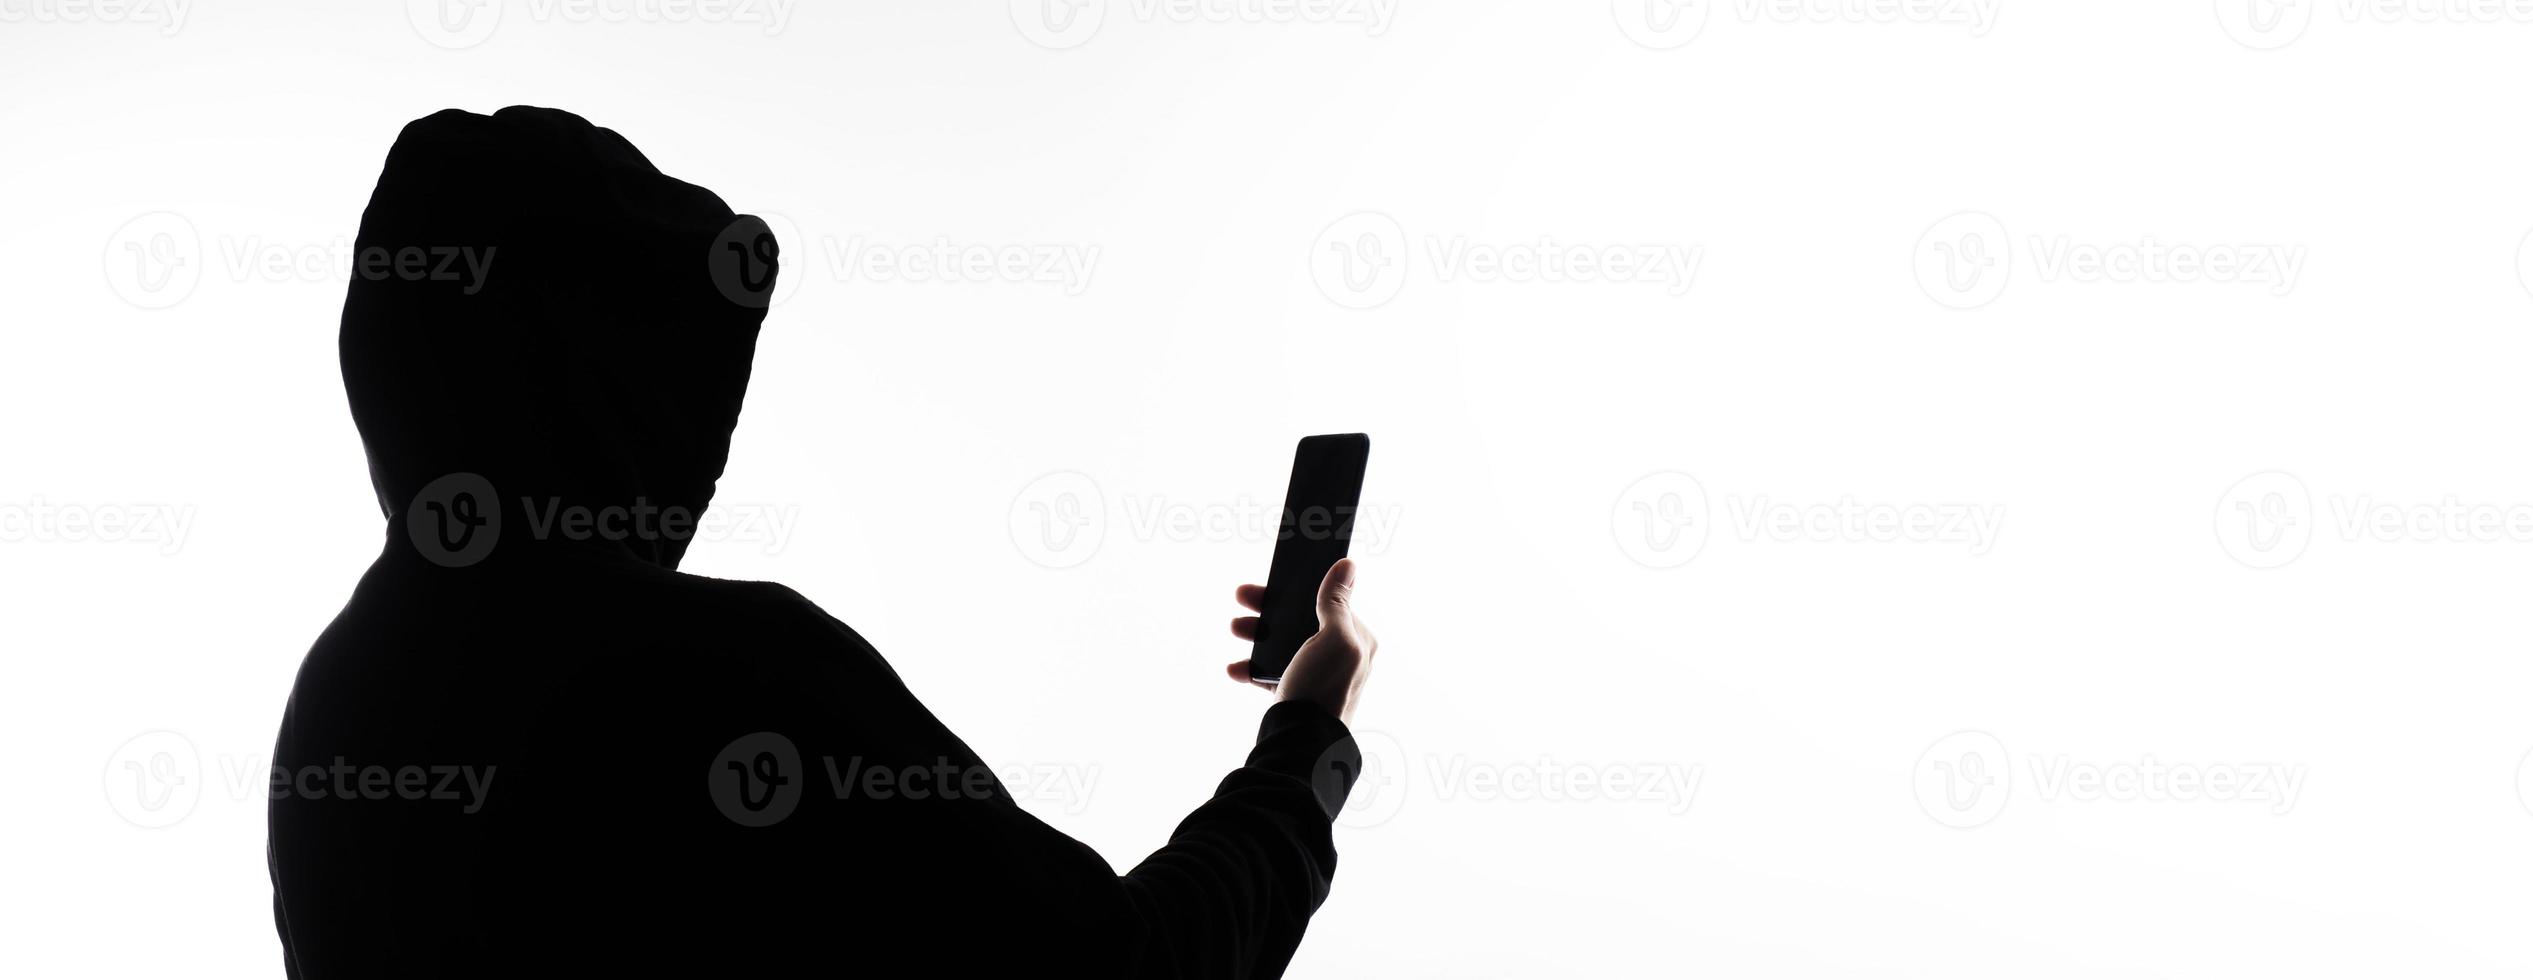 hacker anonym och ansikte mask med smartphone i hand. man i svart huva skjorta innehav och använder sig av mobil telefon på vit bakgrund. representera cyber brottslighet data dataintrång eller stjäla personlig data begrepp foto